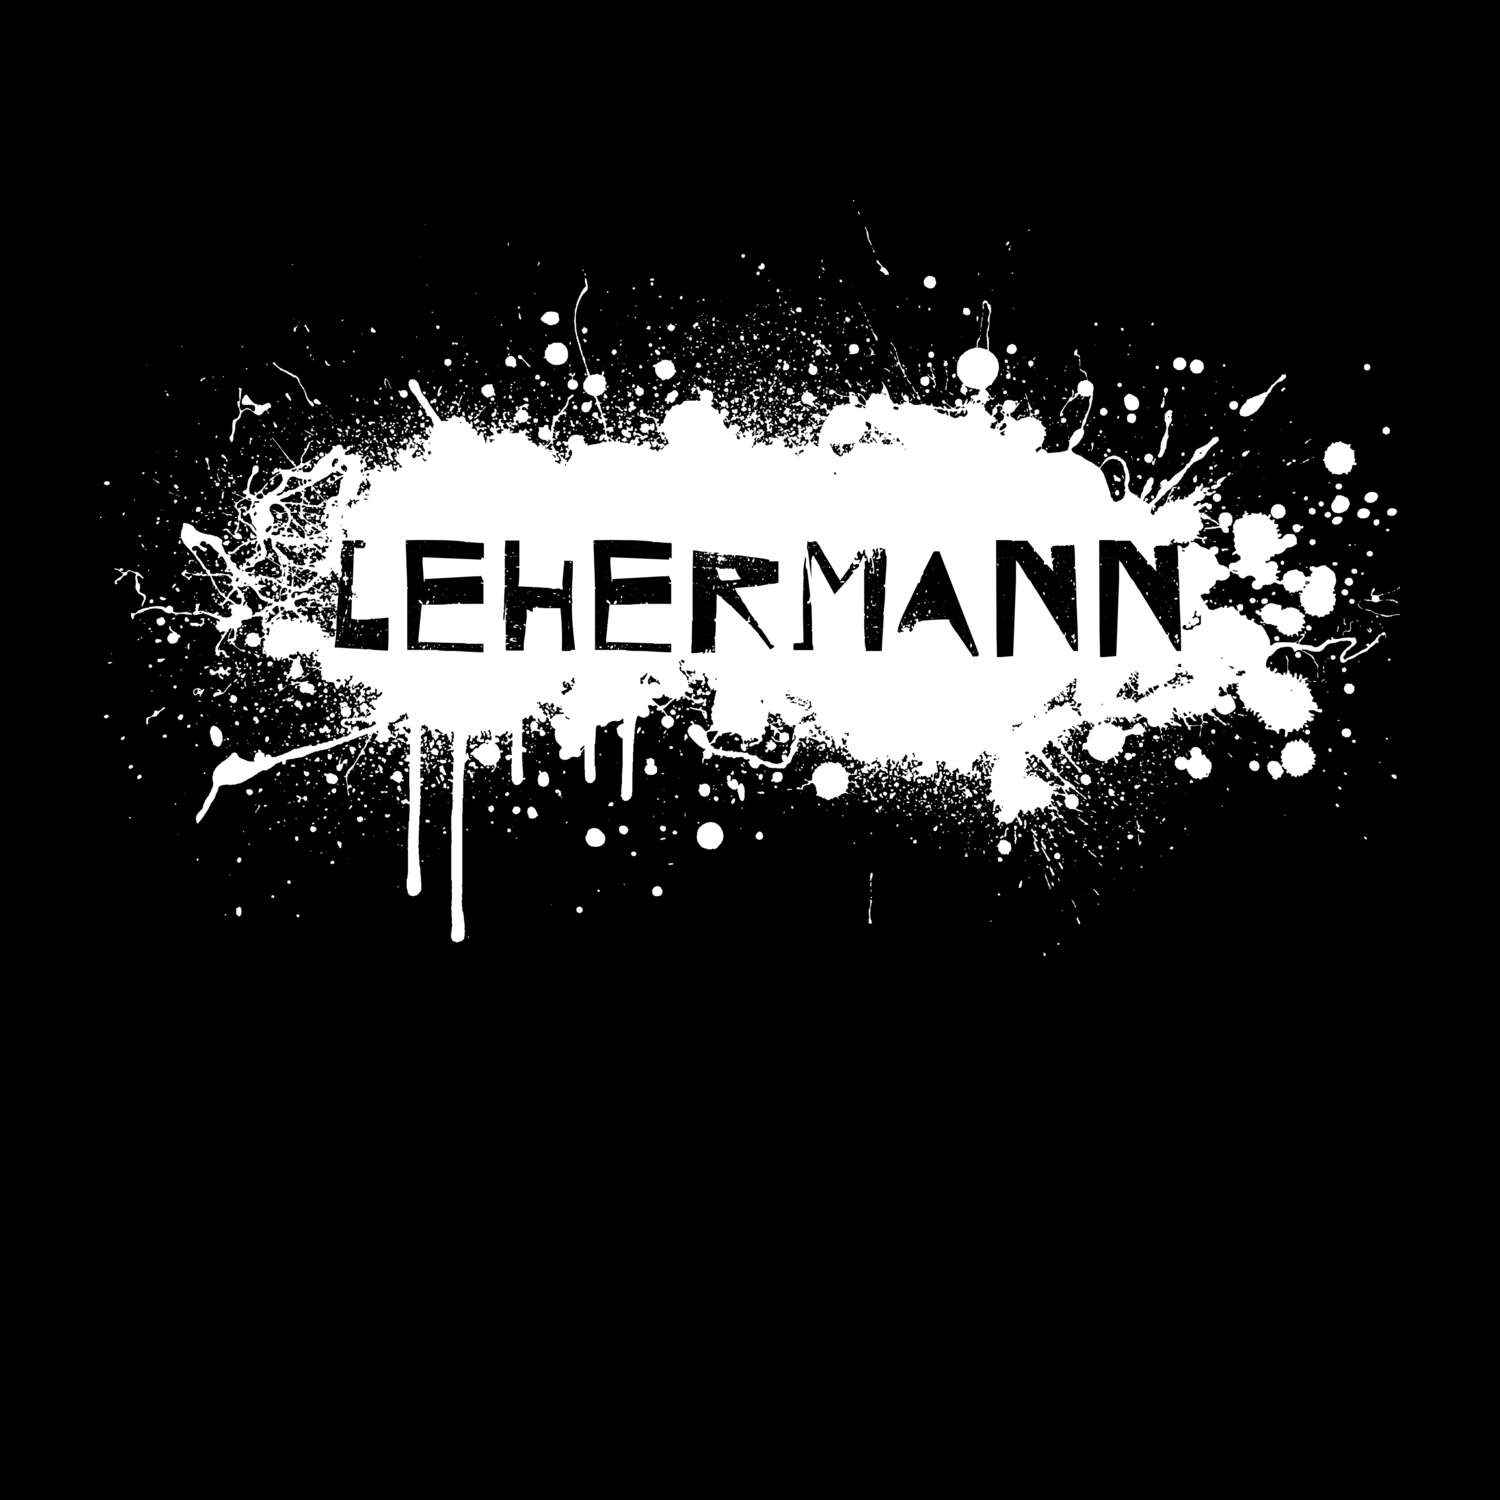 Lehermann T-Shirt »Paint Splash Punk«